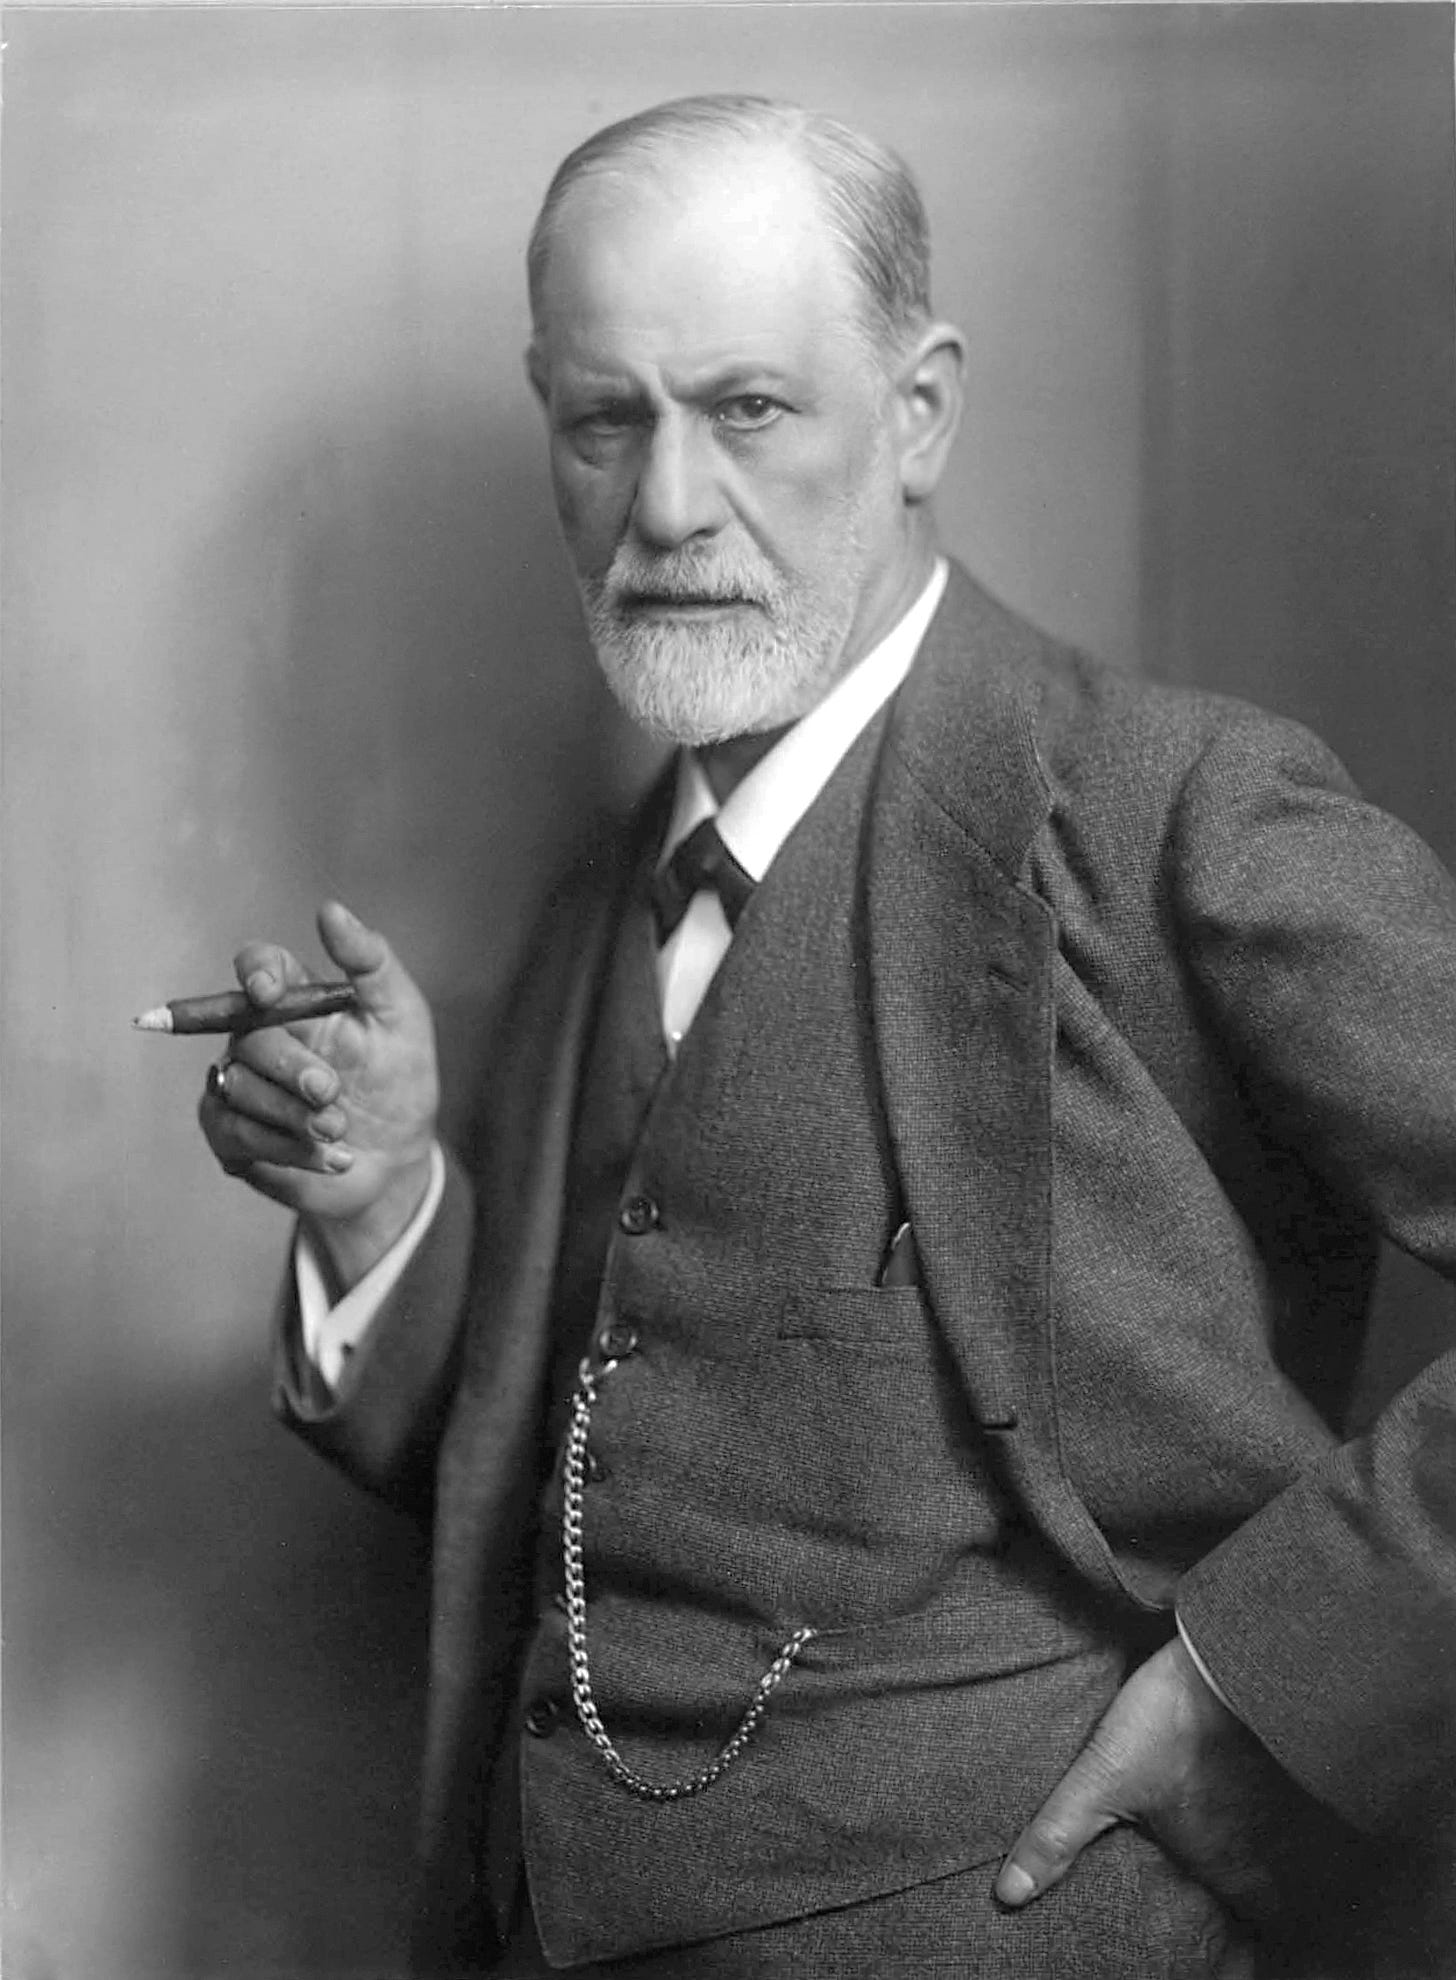 Sigmund Freud - Wikipedia